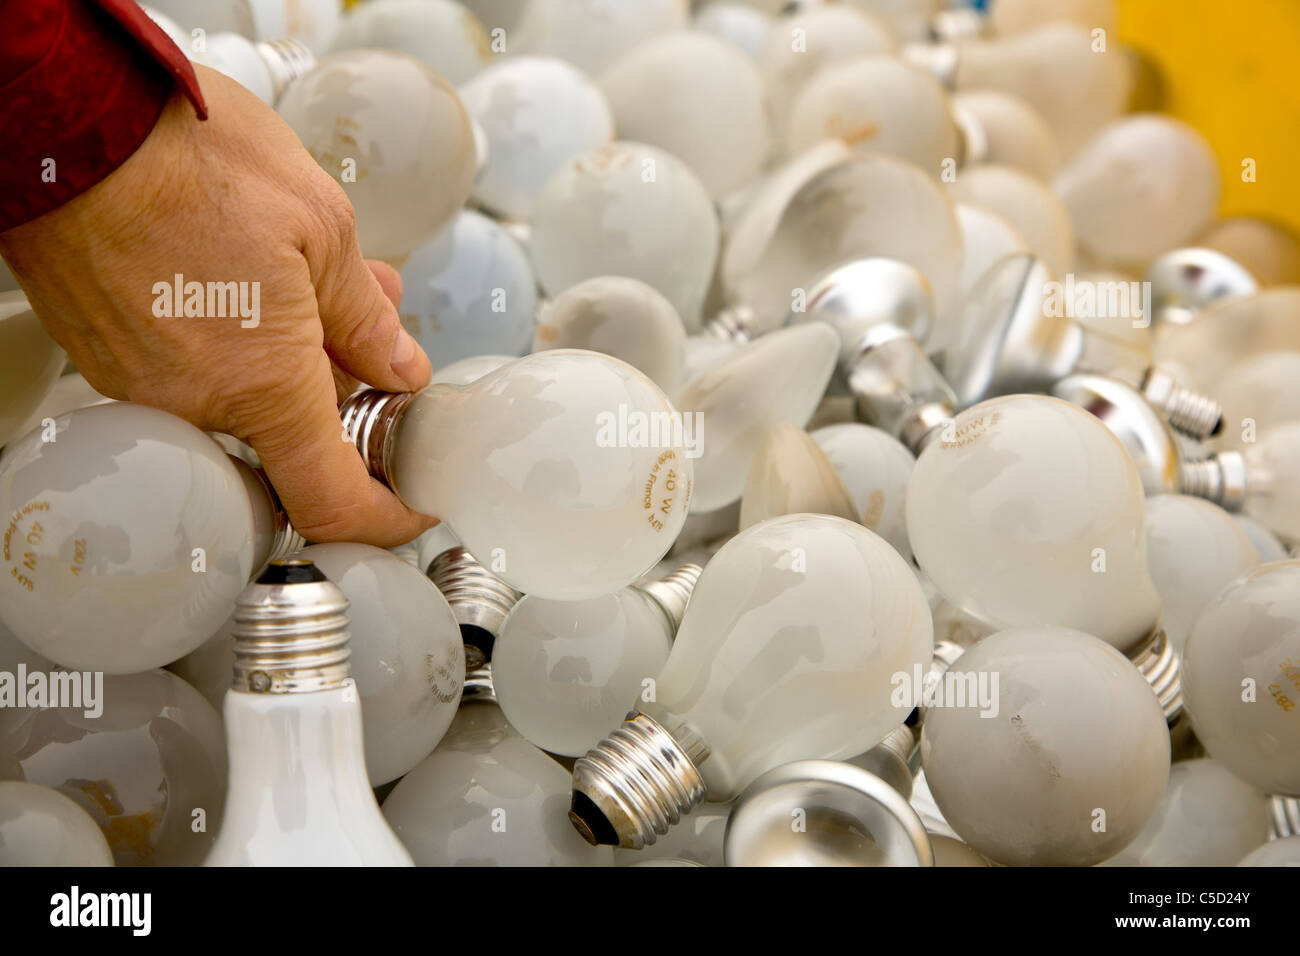 Close-up de una mano sujetando la bombilla entre muchas lámparas de reciclaje Foto de stock